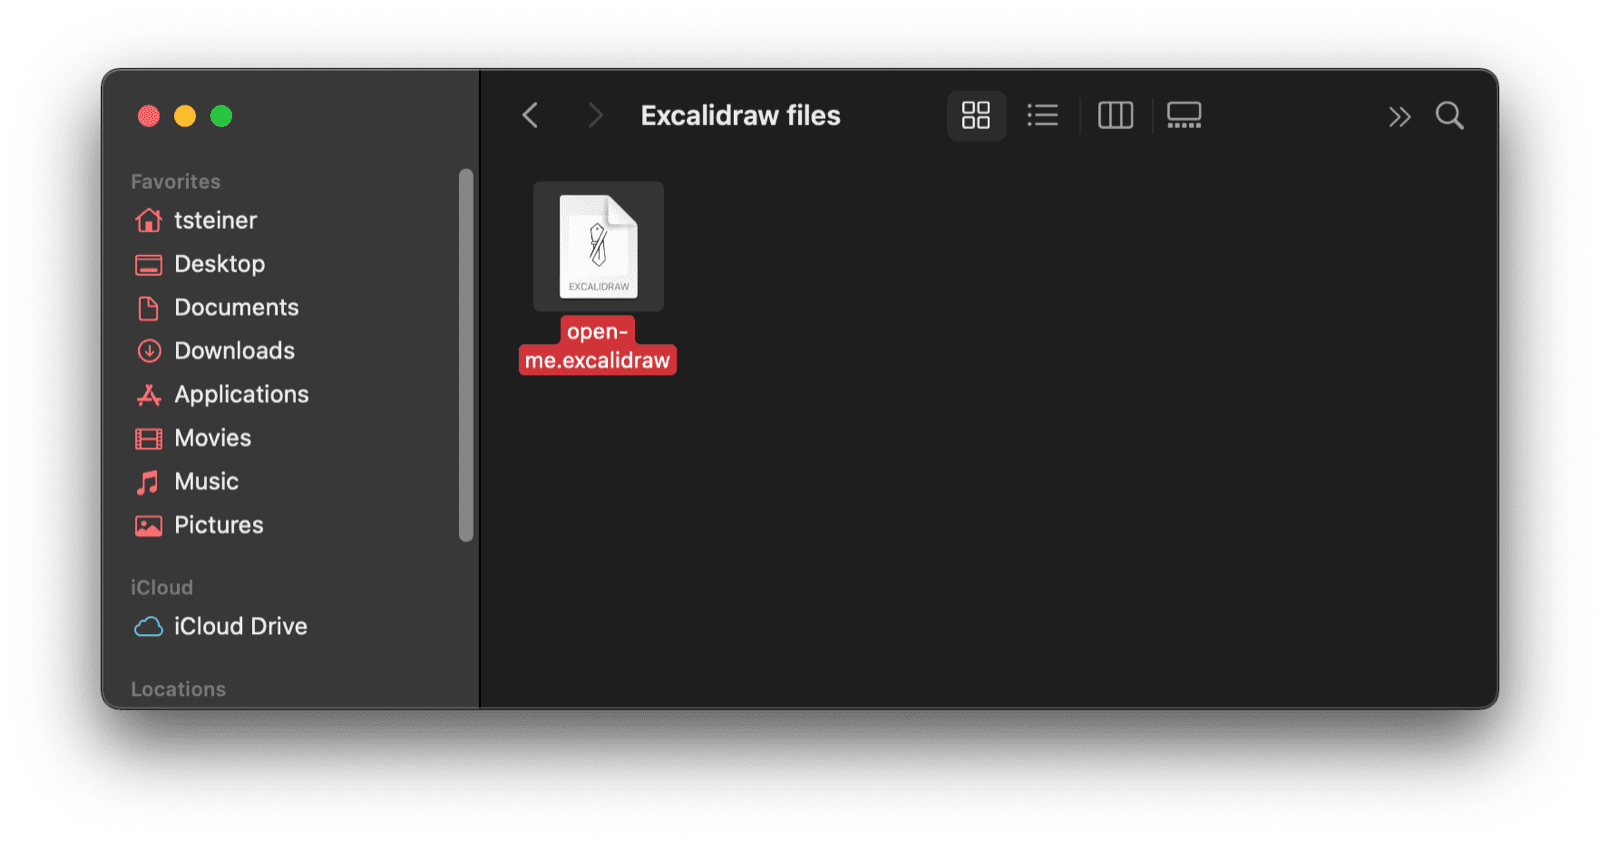 Das macOS-Suchfenster mit einer Excalidraw-Datei.